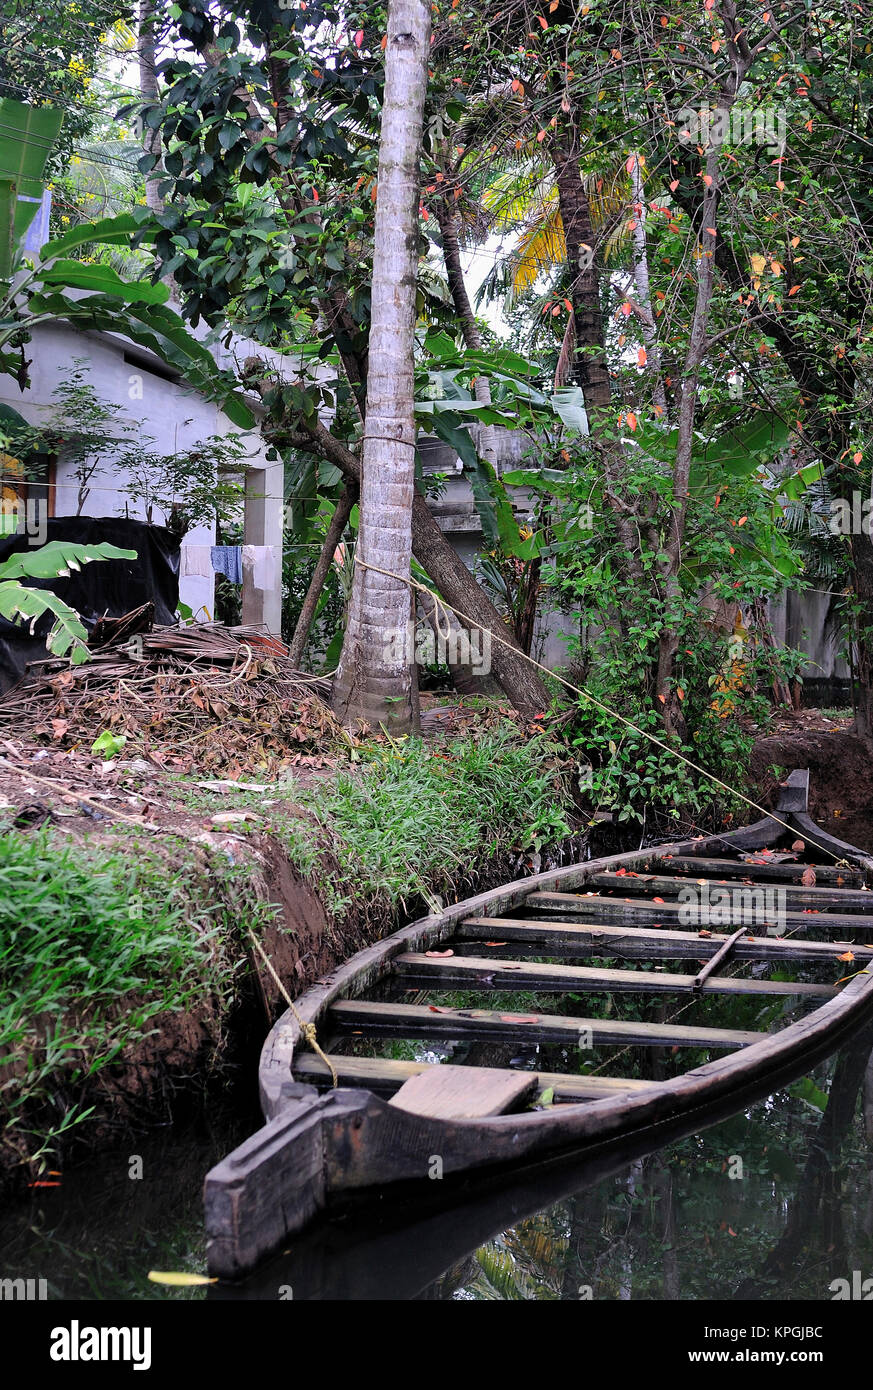 L'Asie, l'Inde, le Kerala (bras morts). Un bateau repose aux côtés d'un inondés Kerala Backwaters canal. Banque D'Images